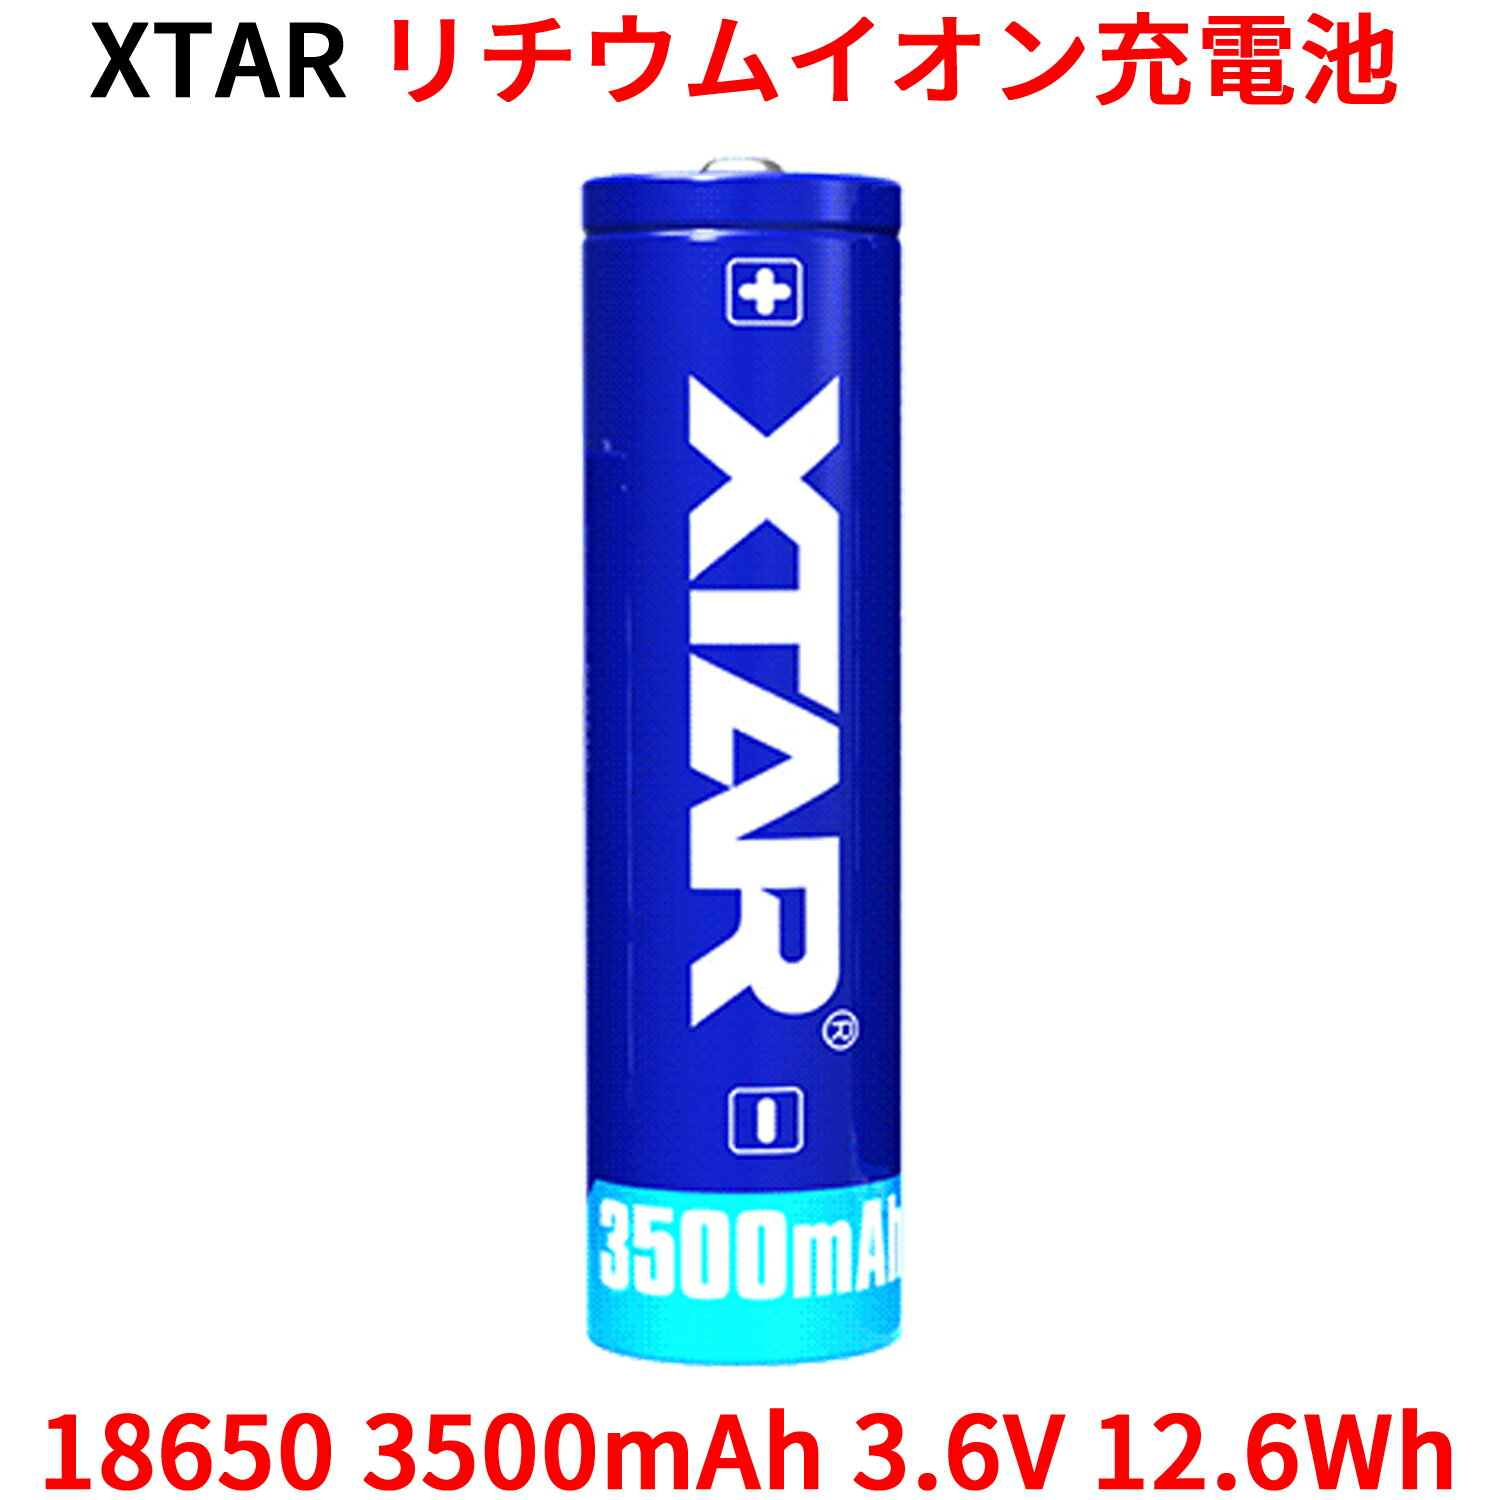 XTAR 18650 3500mAh 3.6V 12.6Wh 充電式リチウムイオン電池 仕様 容量:3500mAh 電圧:3.6V 12.6wh サイズ:高さ68.8cm±0.5mm 　　　 直径:18.4mm±0.3mm 最大連続放電電流:10A セル:Panasonic-Sanyo 　　 NCR18650GA プロテクション:有 フラッシュライトにもおすすめです。 最大10Aの連続放電電流のこのバッテリーをフラッシュライトに使用とフラッシュライトの最高のパフォーマンスを発揮する事ができます。 また、内部抵抗が低いため、安定した電圧を供給する事ができます。 オリジナル パナソニック(Panasonic) サンヨー(Sanyo) セル 強力で安定性と耐久性の高い高品質バッテリーです。 高い安全基準 過充電、過放電、ショート保護などの複数の安全テストに合格した安全性の高いバッテリーです。 500回充電可能 500回繰り返し充電できるので、非充電式のバッテリーの500個分に相当するコストパフォーマンスが高く環境にも優しいバッテリーです。